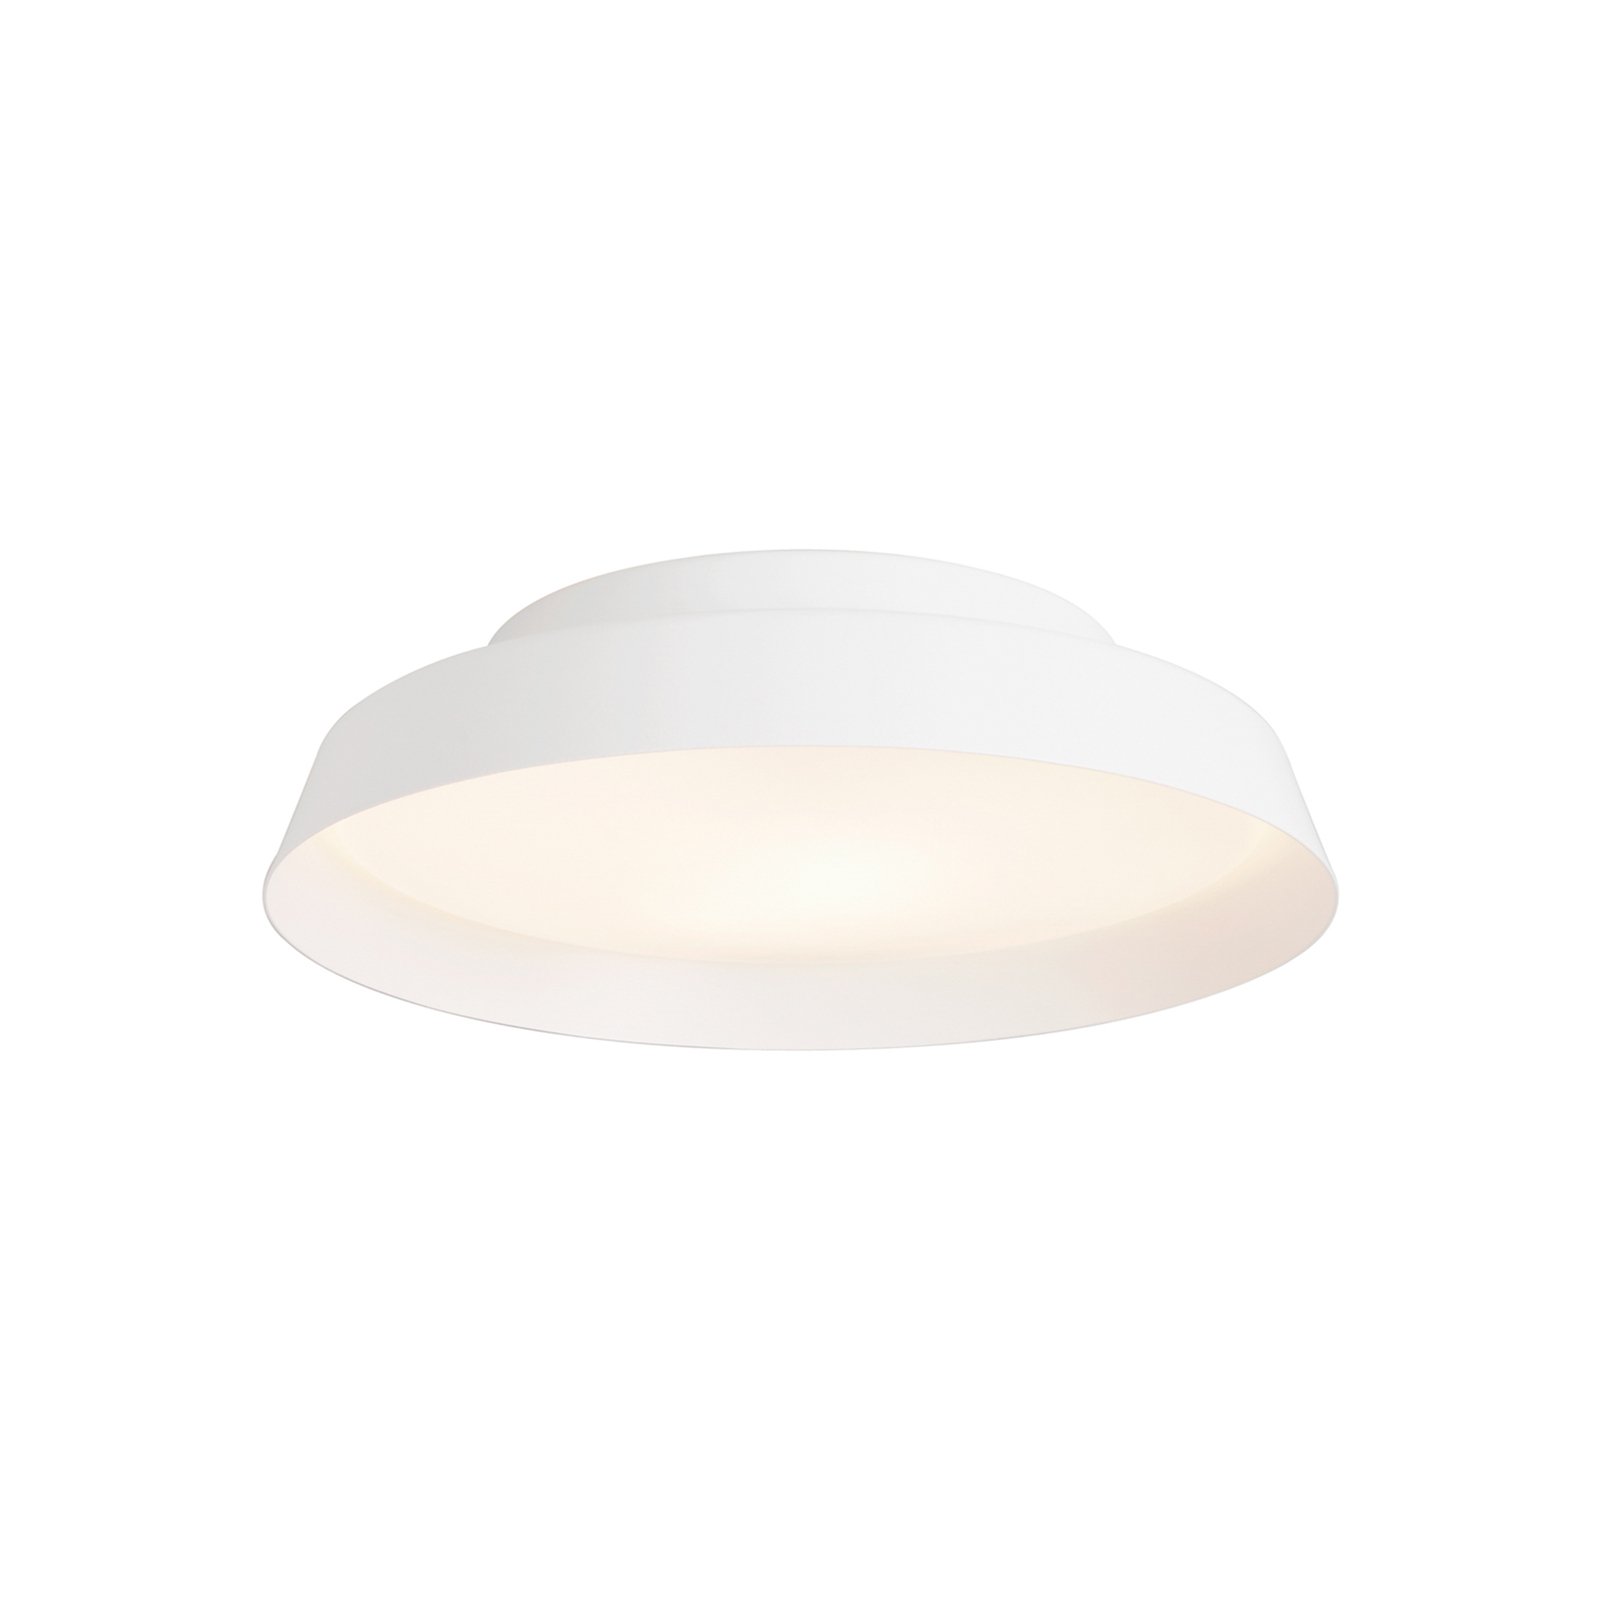 LED mennyezeti világítás Boop! Ø 37 cm fehér/fehér